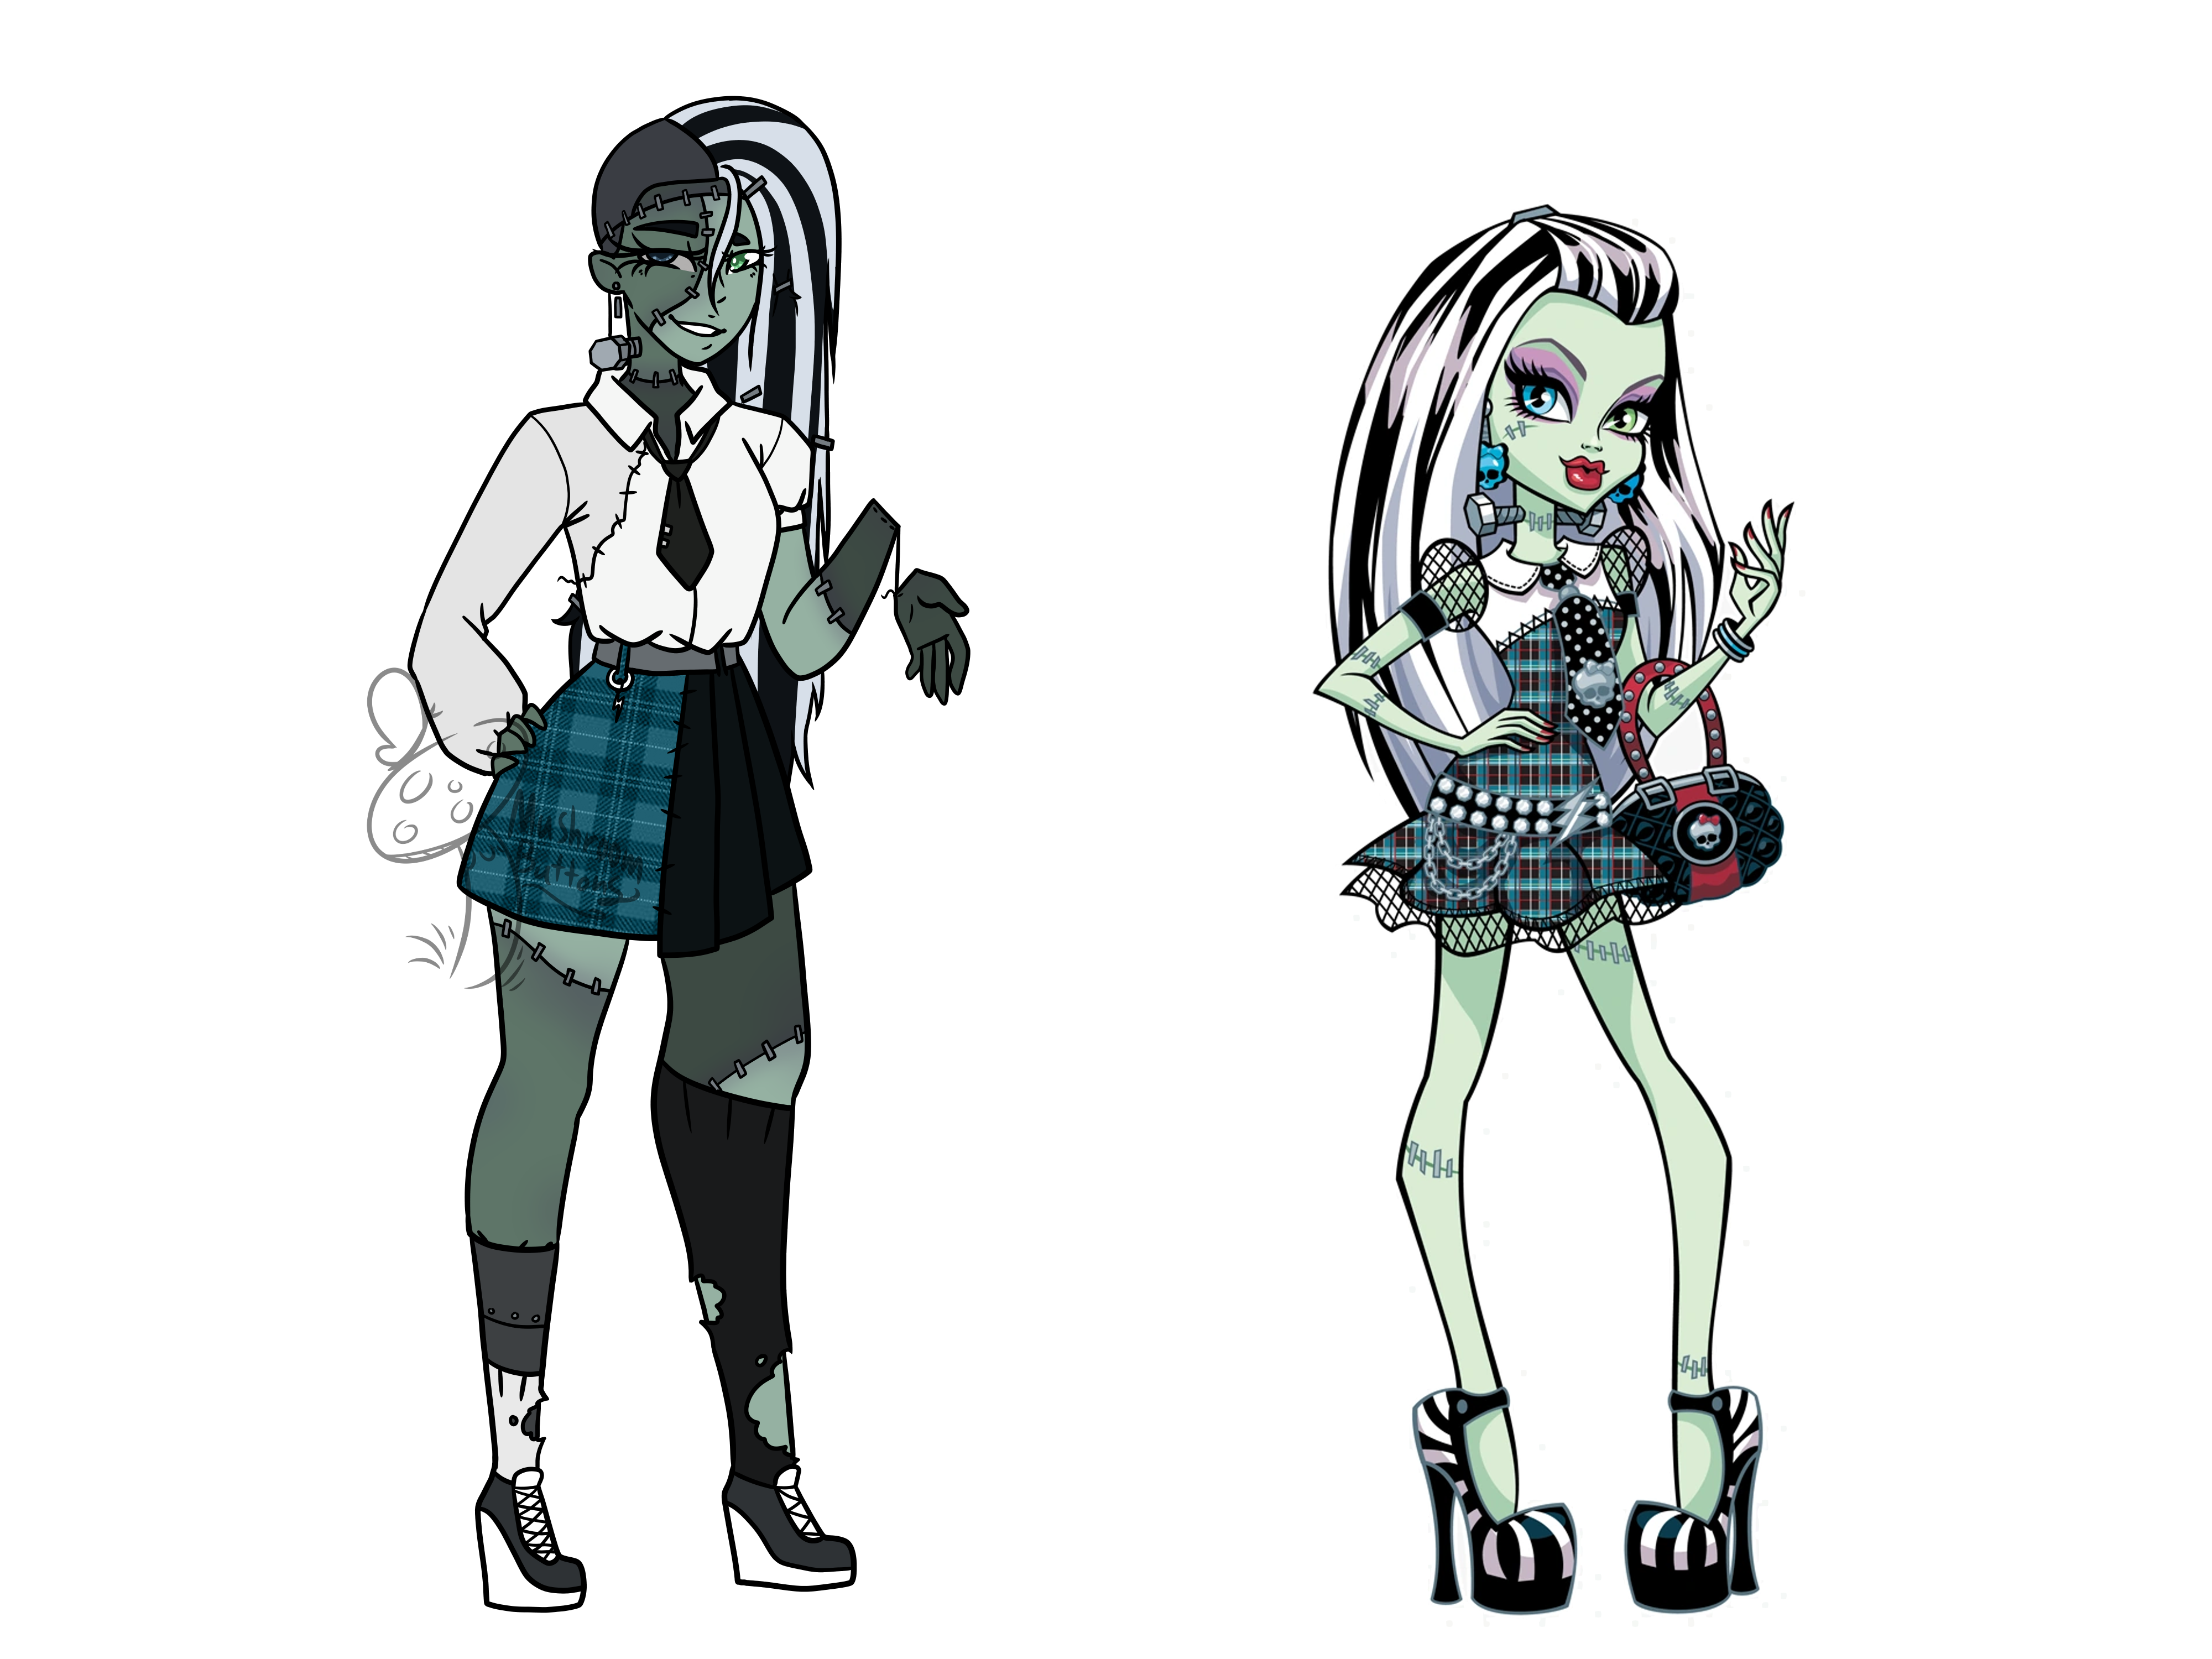 Monster High Redesign: Frankie Stein by Chesshire-Code on DeviantArt